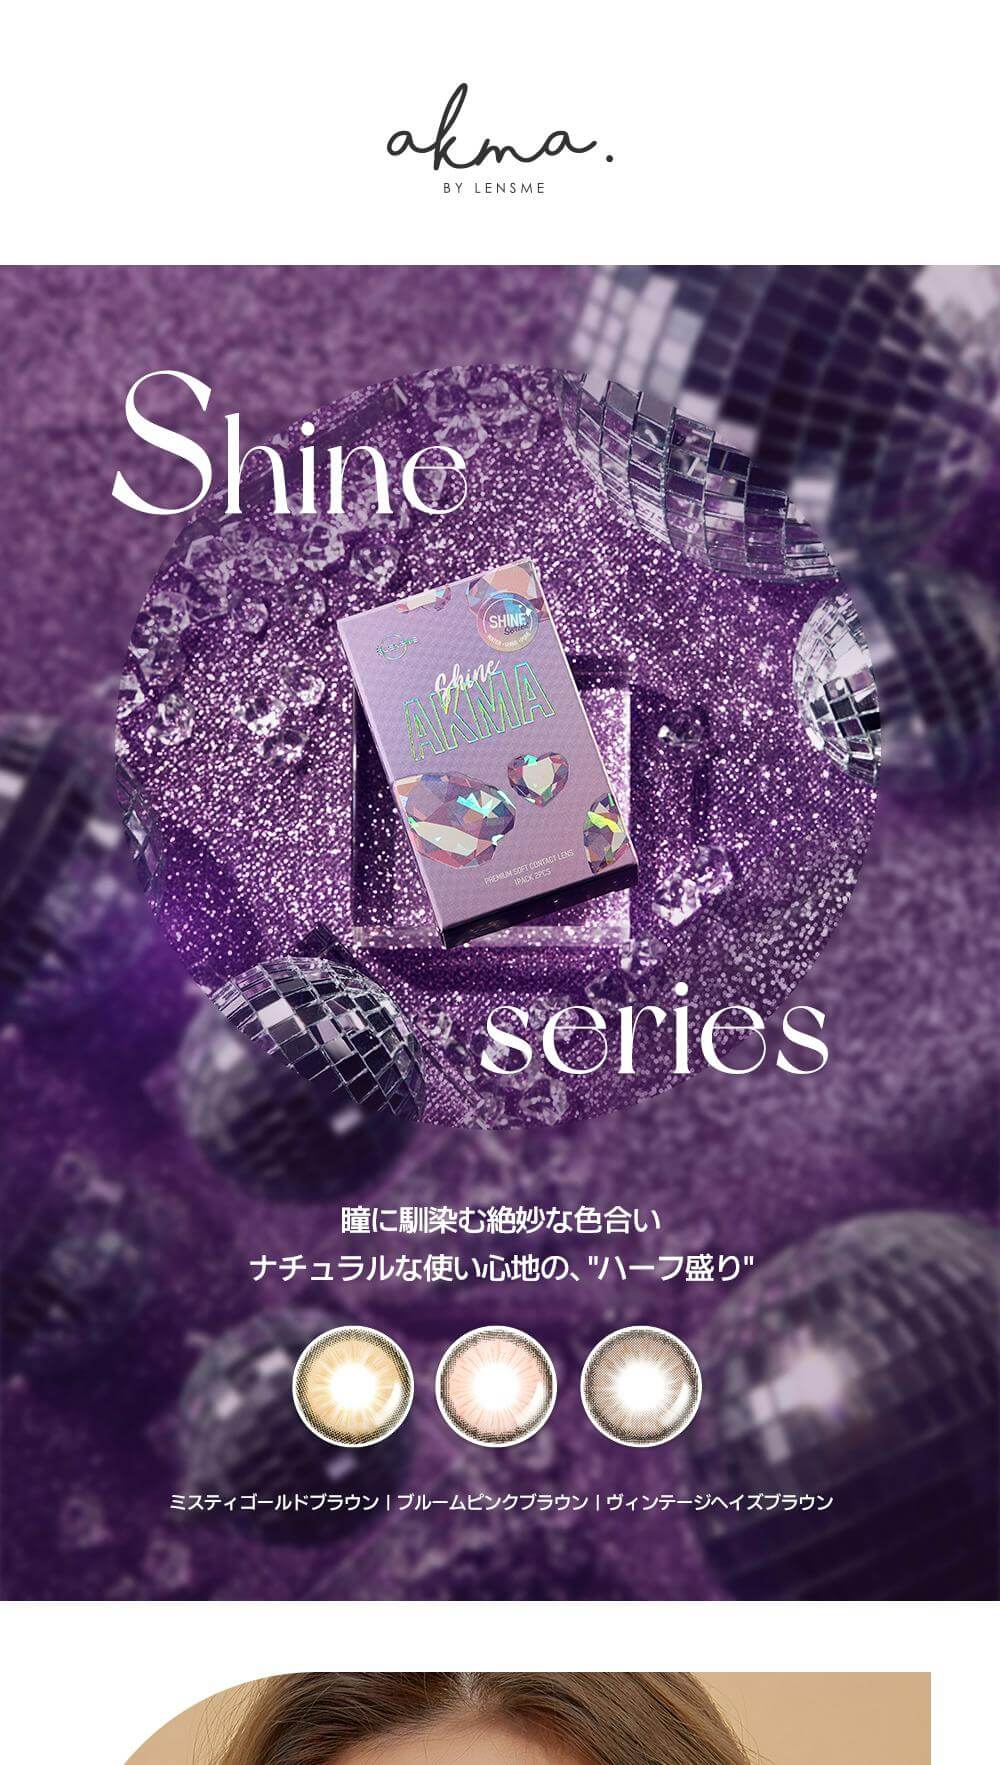 韓国カラコンブランド初の日本基準の正式認証済みカラコン『AKMA by LENSME』瞳に馴染む絶妙な色合いでハーフ盛りShineシリーズ